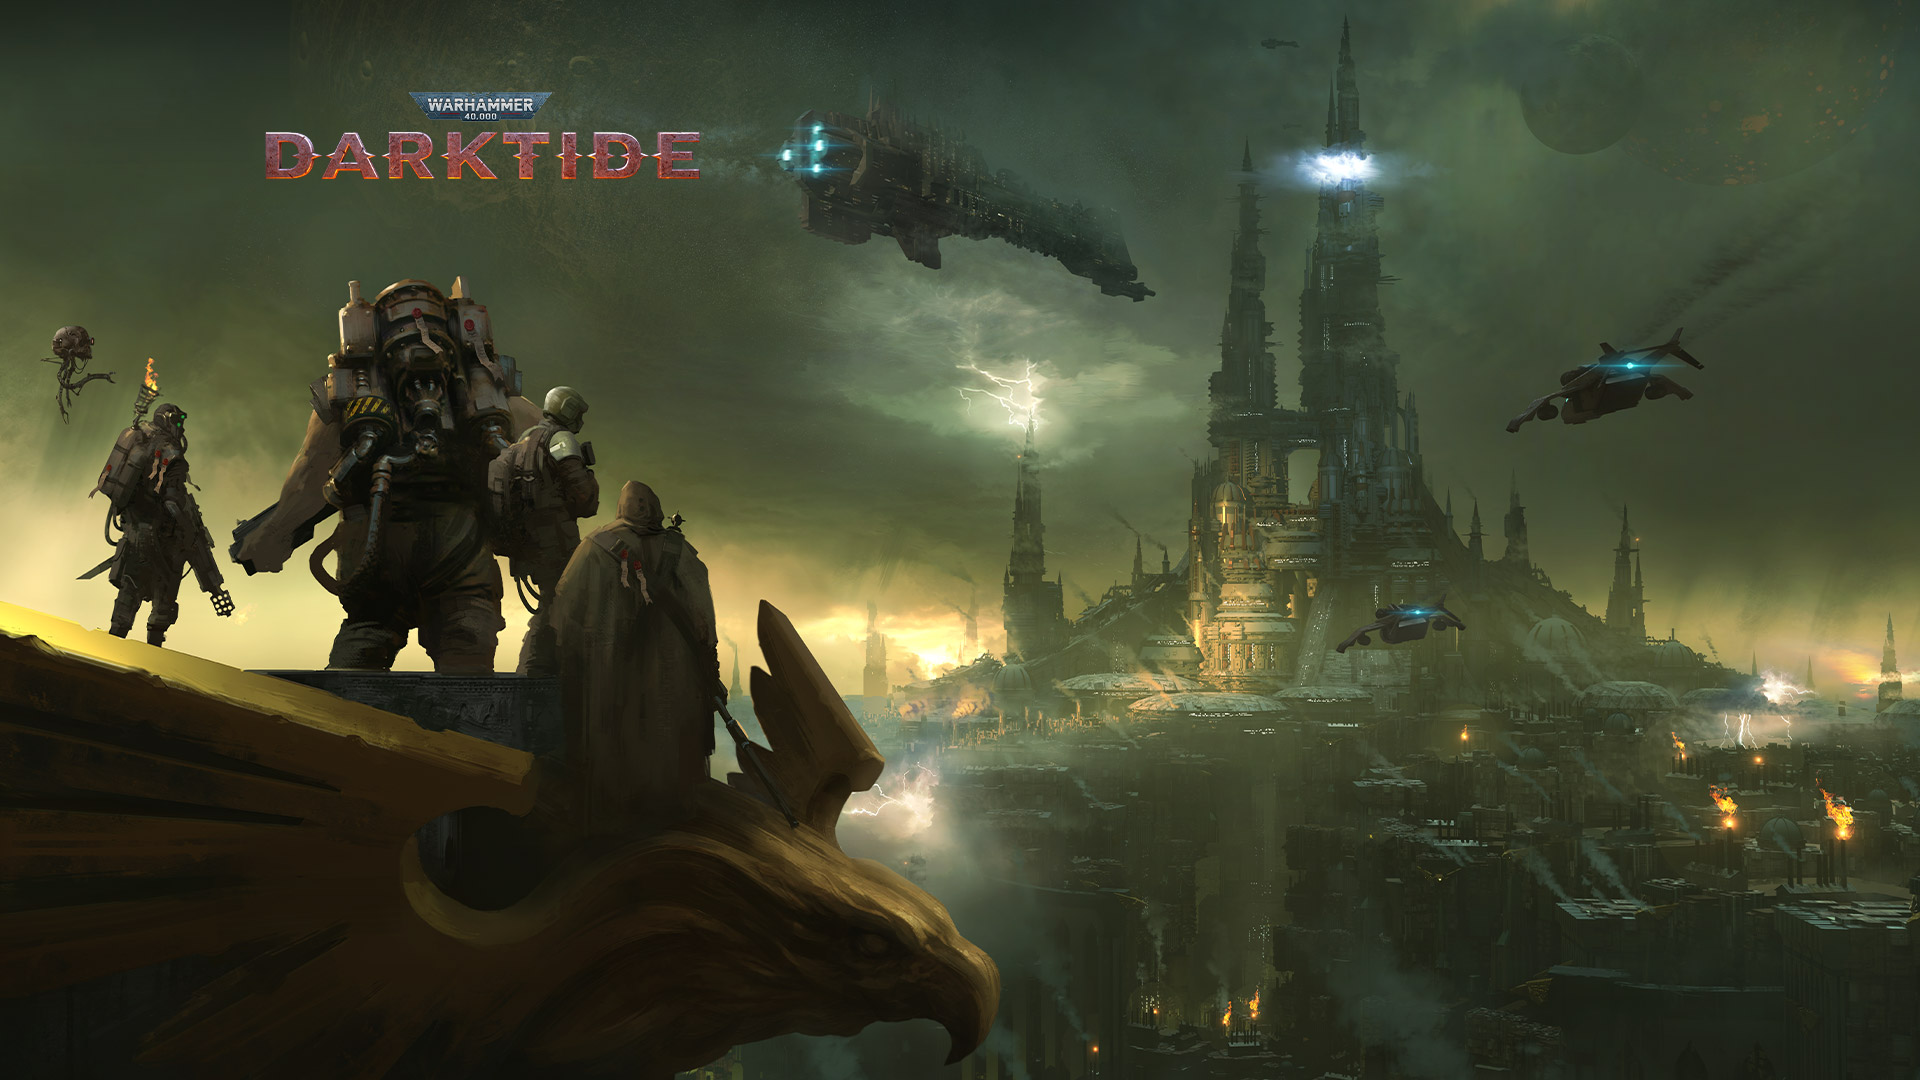 Warhammer 40,000 Darktide, grupa postaci spogląda na miasto spowite mgłą.